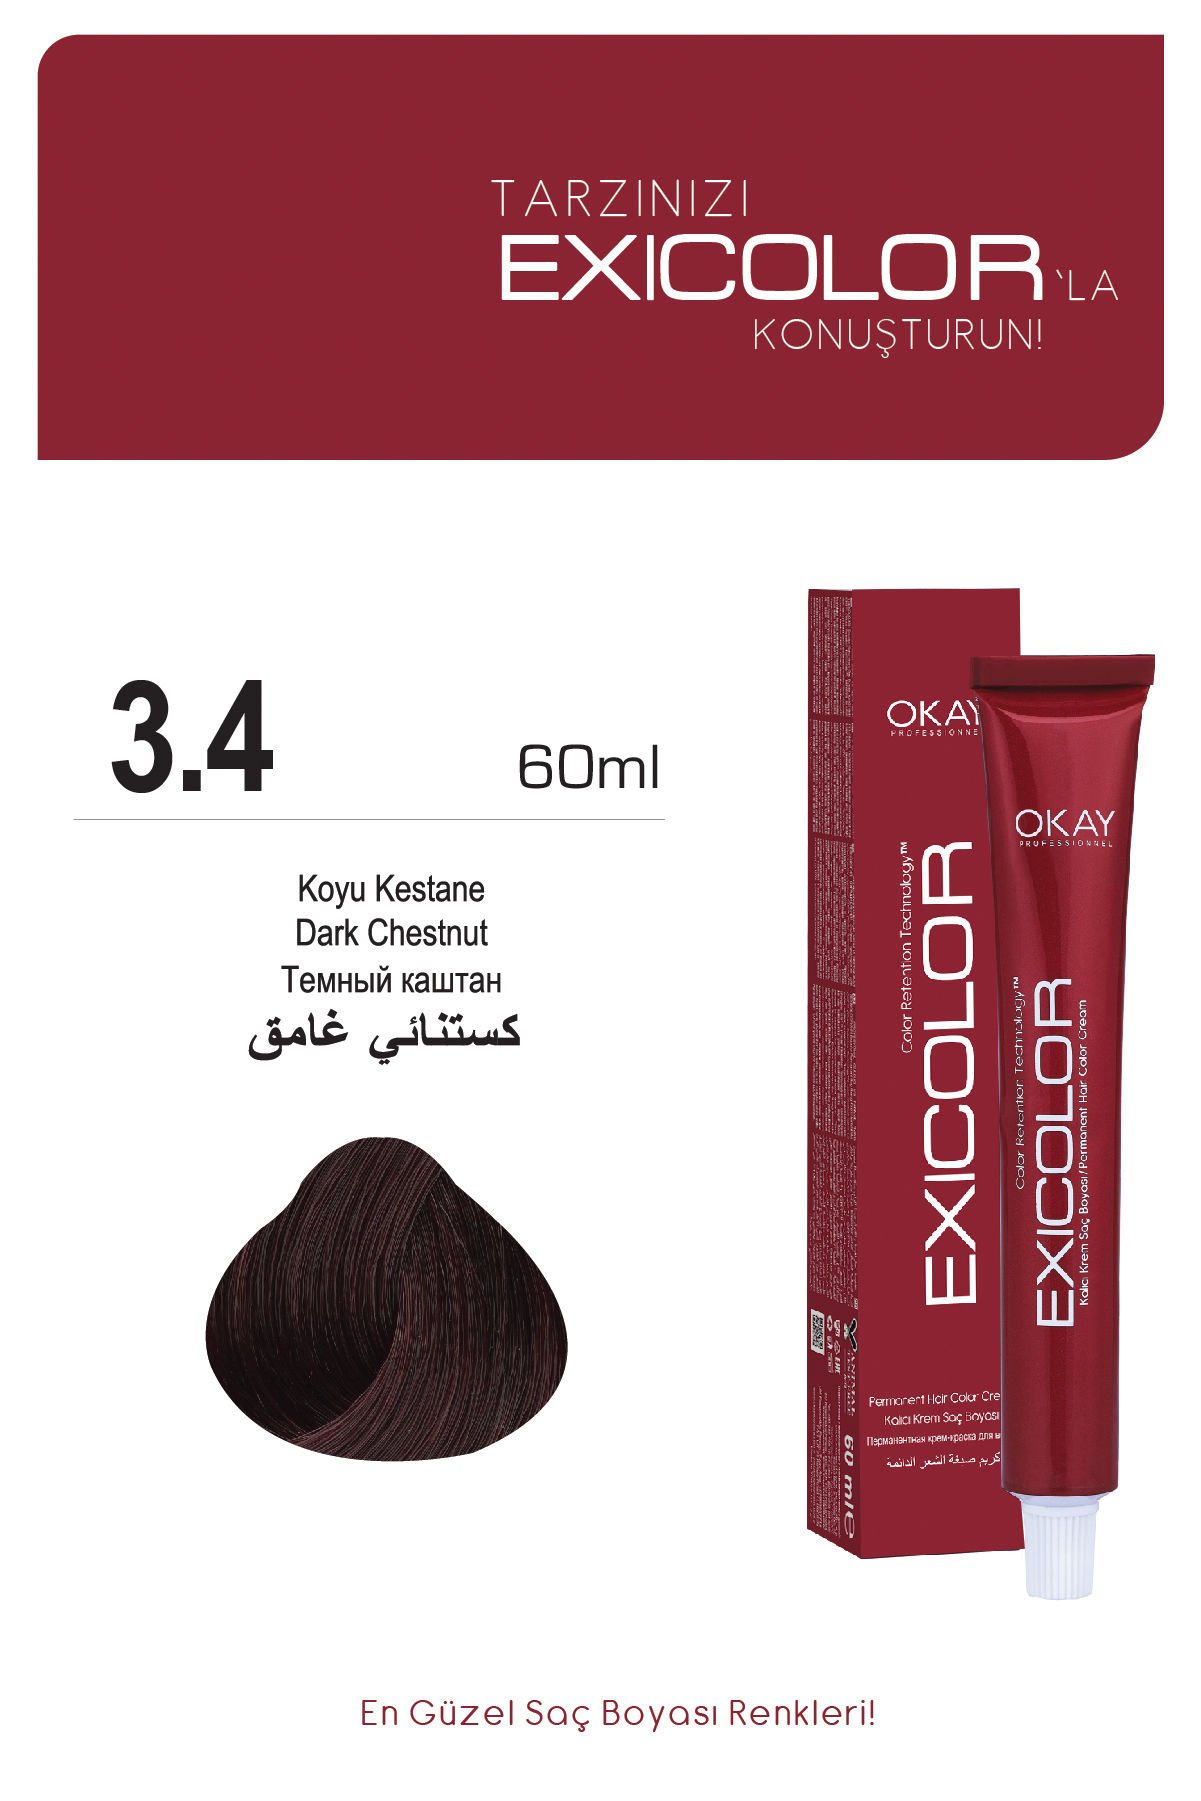 Exicolor 3.4 Koyu Kestane - Kalıcı Krem Saç Boyası 60 ml Tüp